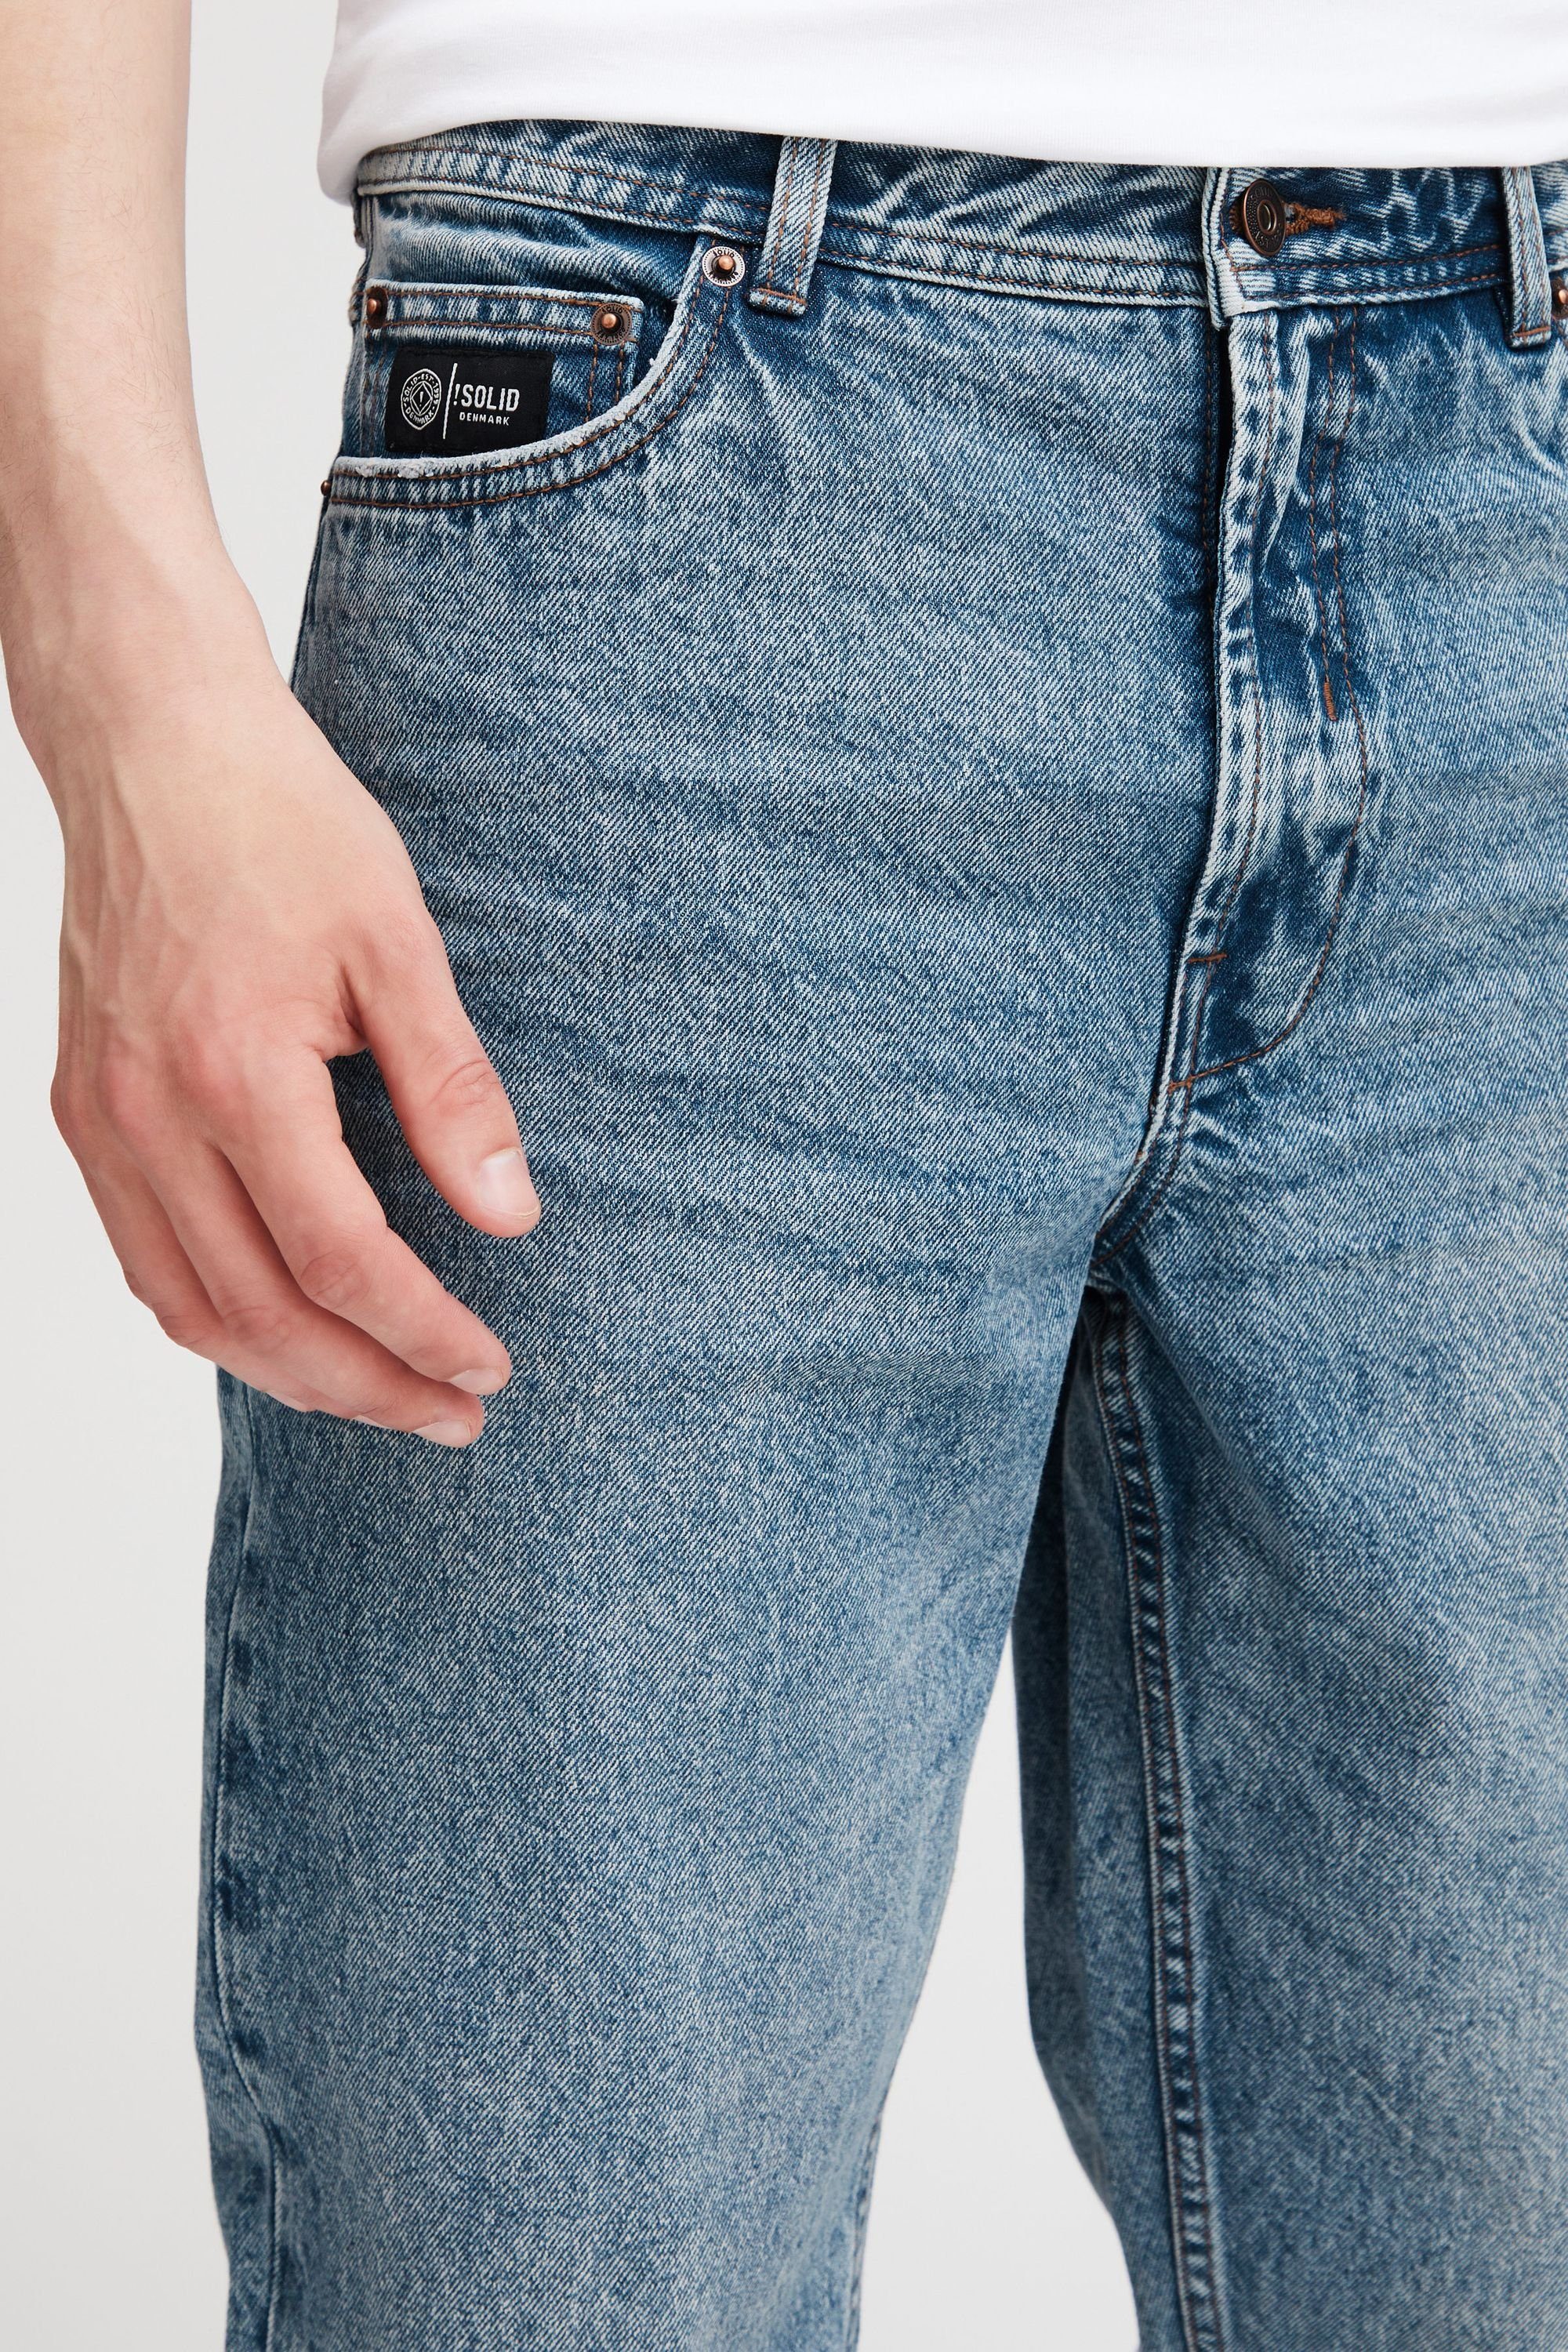 Blue 5-Pocket-Jeans (700030) Vintage !Solid Denim SDHoff Middle